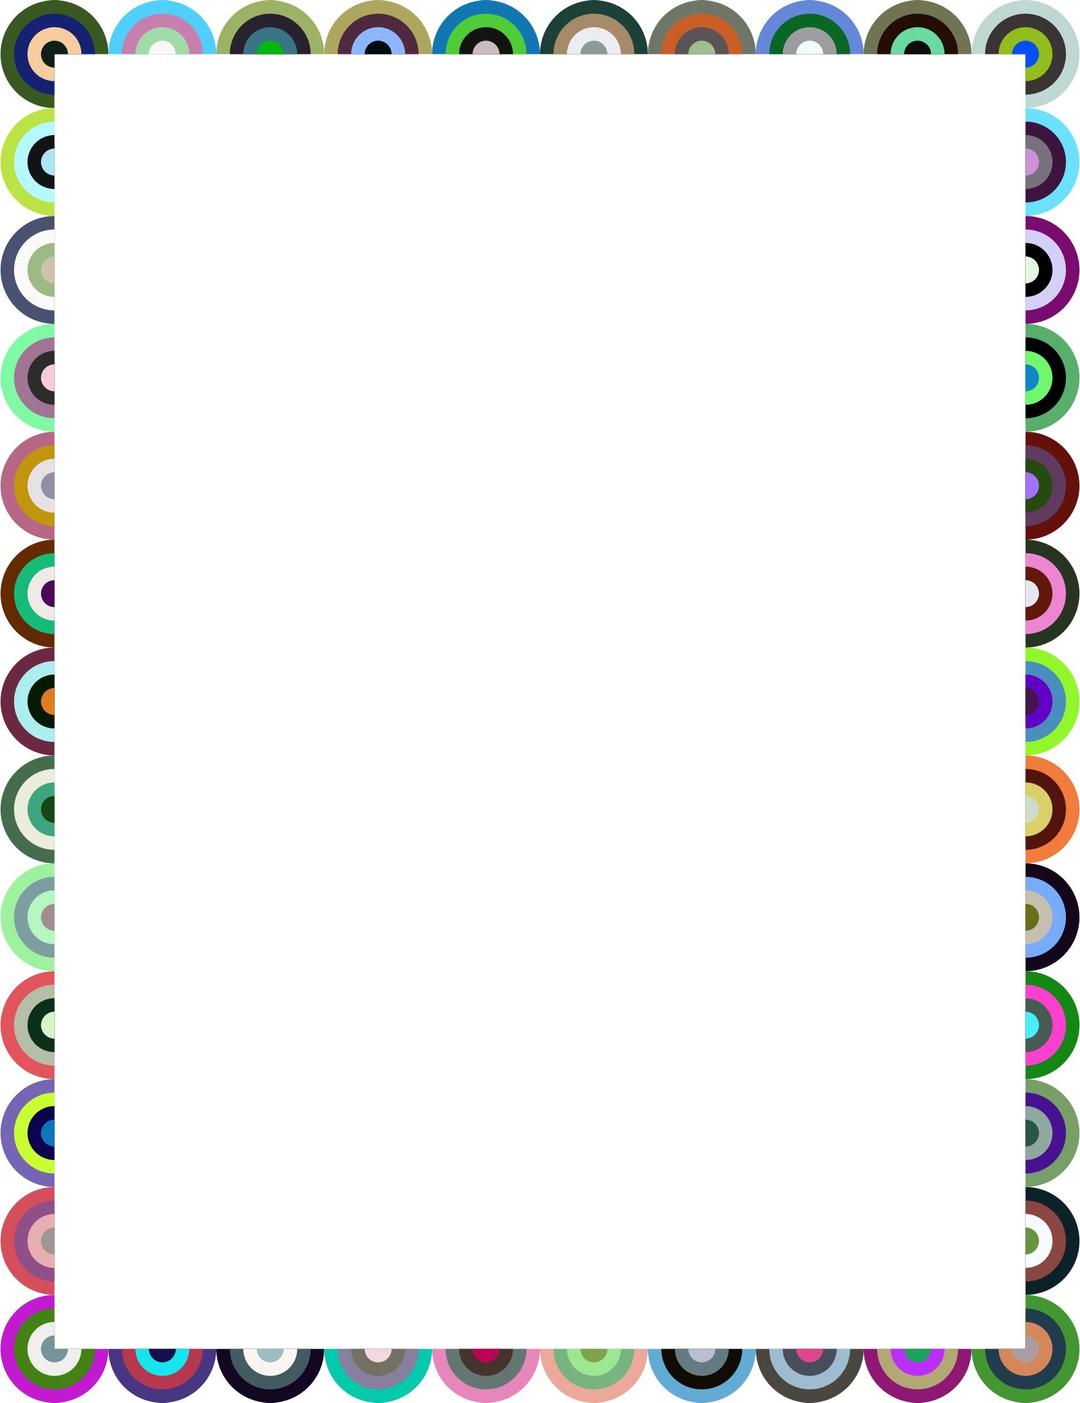 Target frame (colour) png transparent